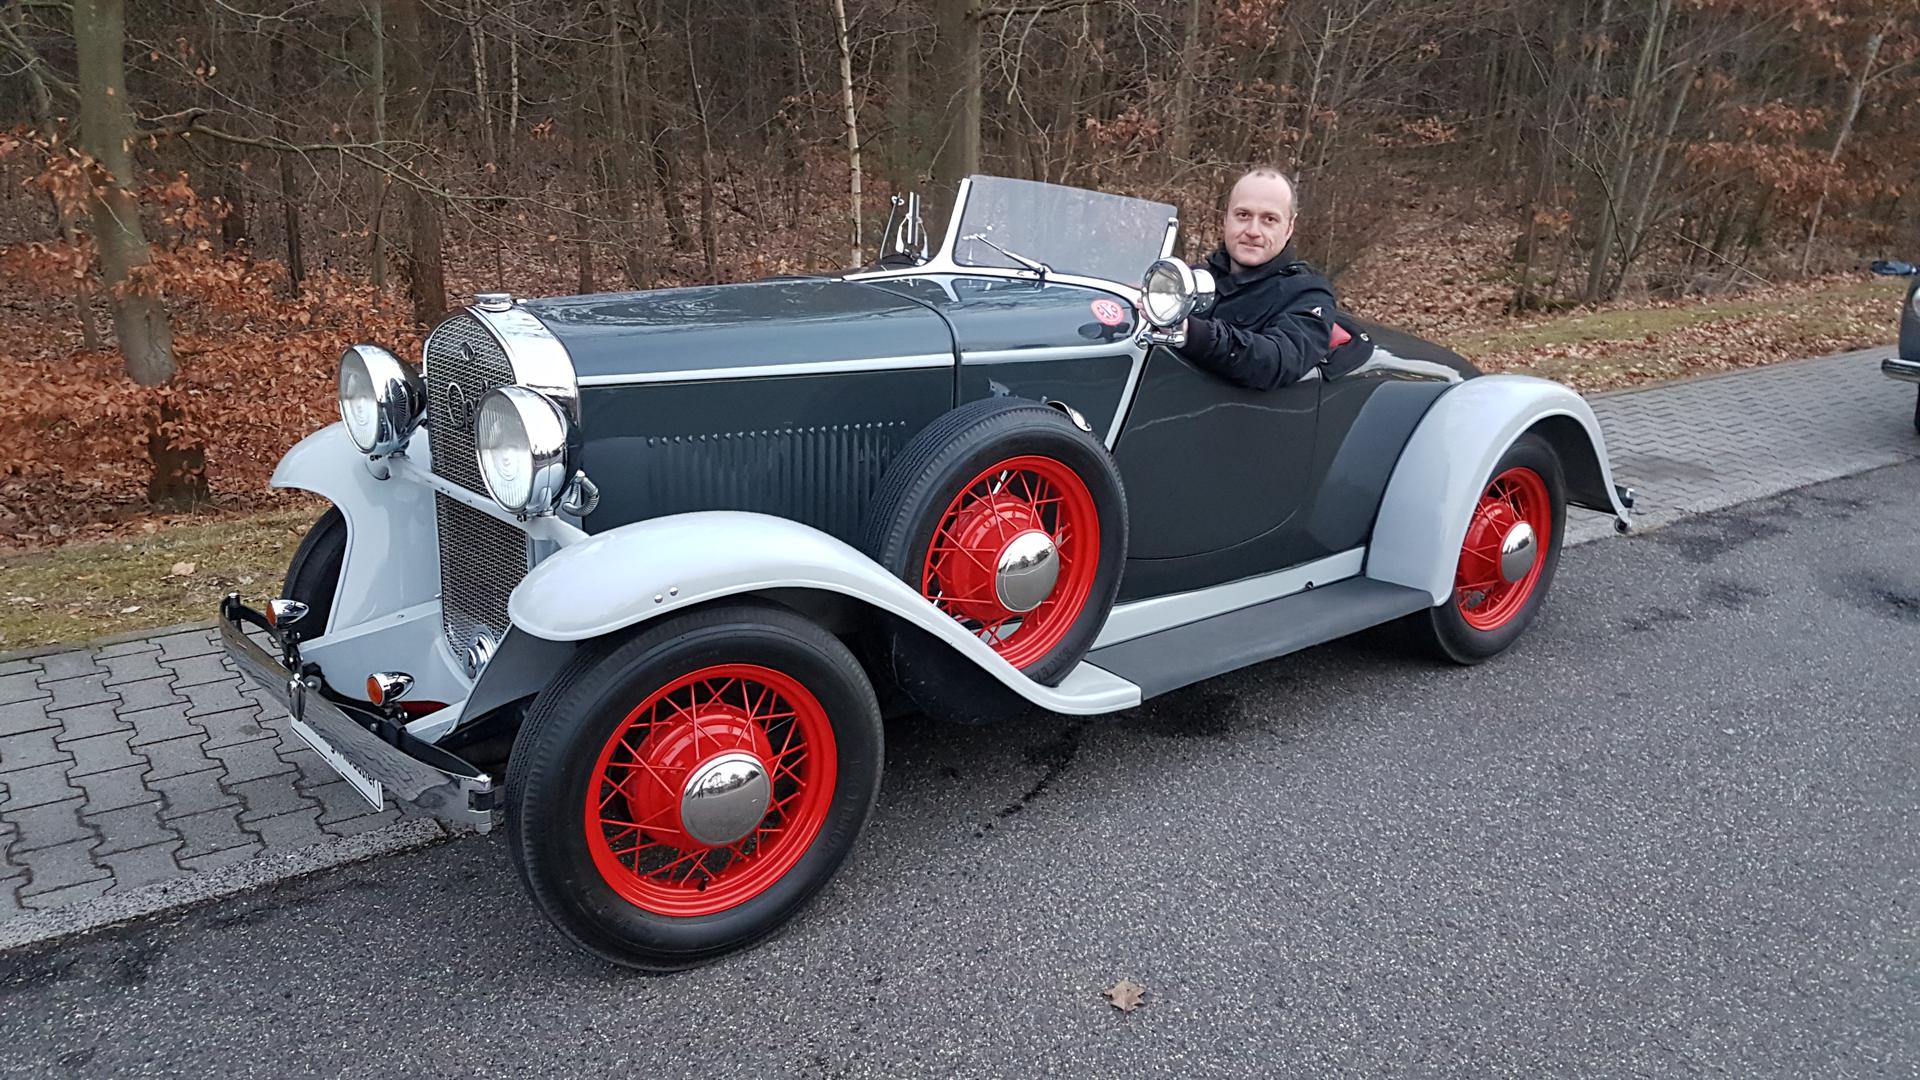 OPEL MOONLIGHT ROADSTER IZ 1932.
Prekrasan kabriolet bio je udoban i upravljiv automobil, koji je bio ispred svog vremena